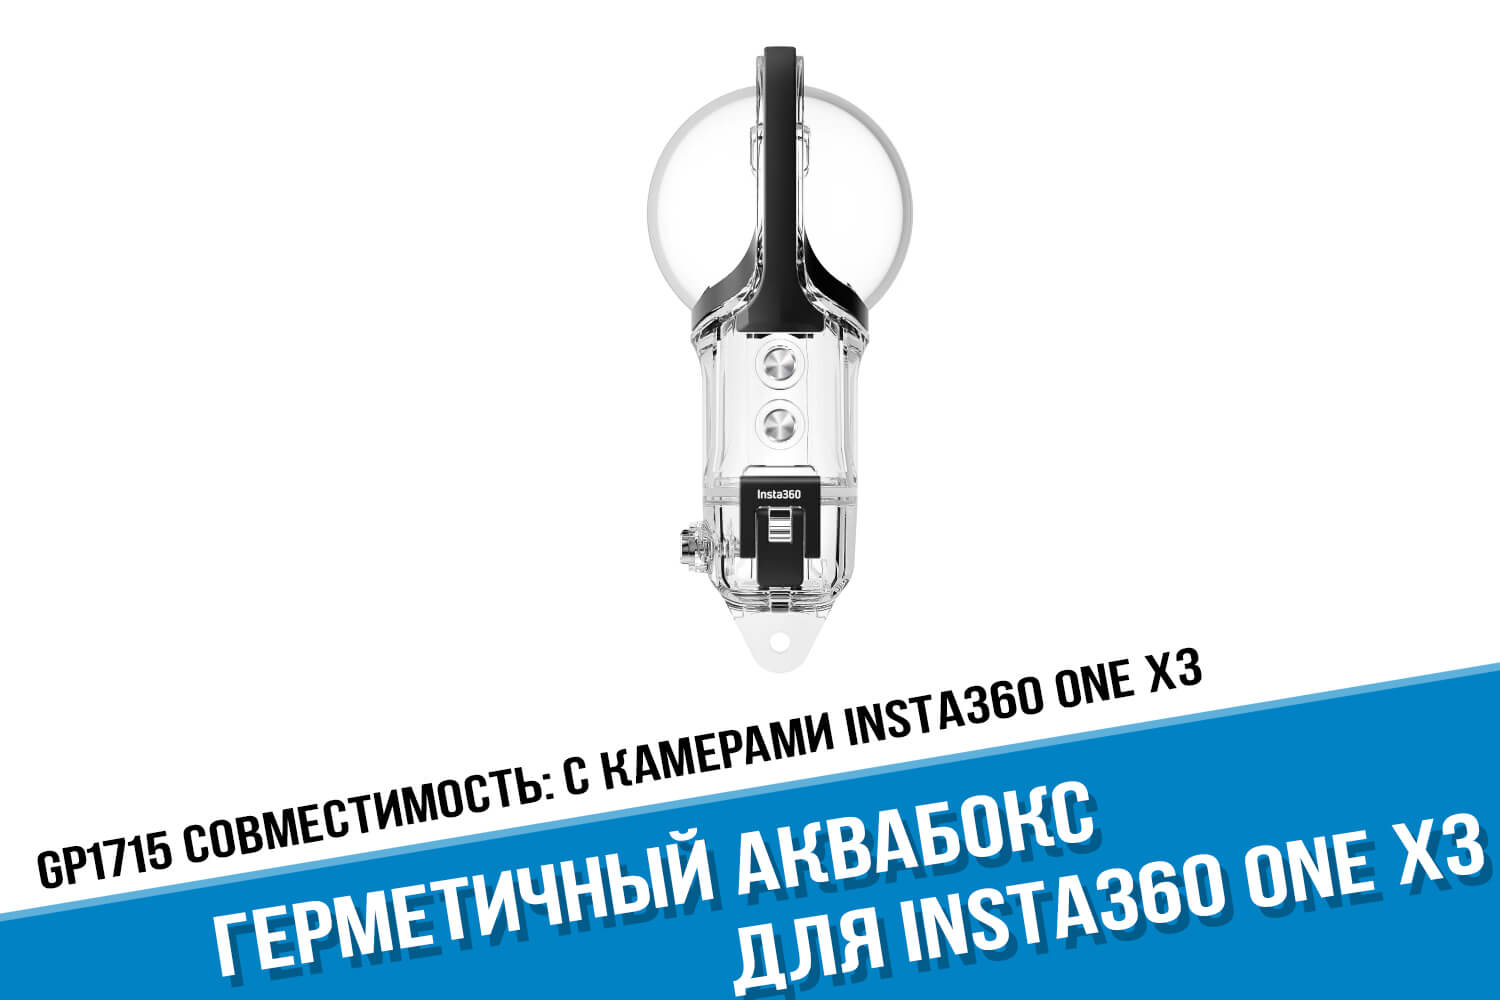 Аквабокс для камеры Insta360 One X3